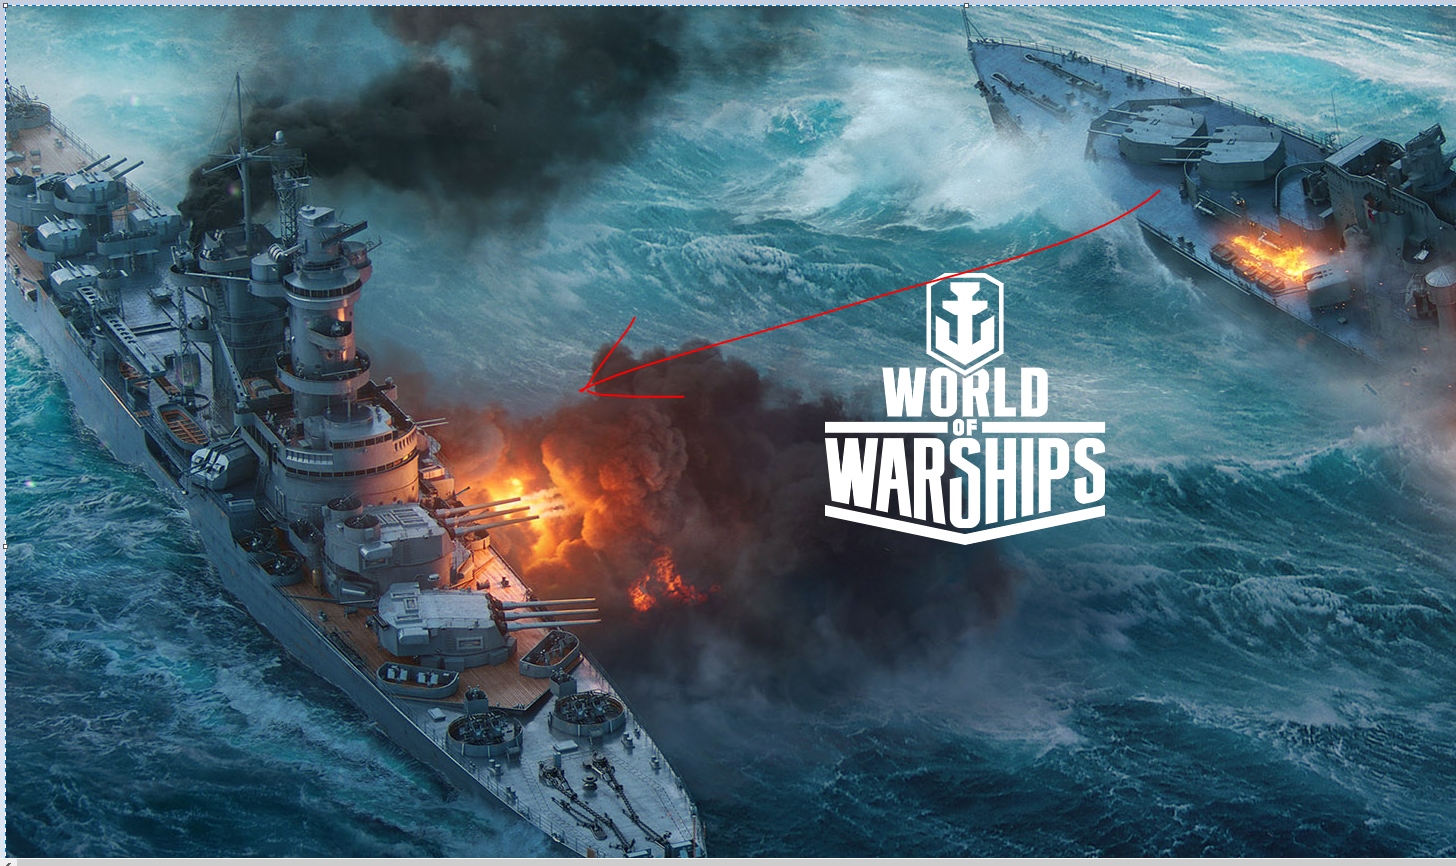 что за подводная лодка появилась в игре world of warships фото 118